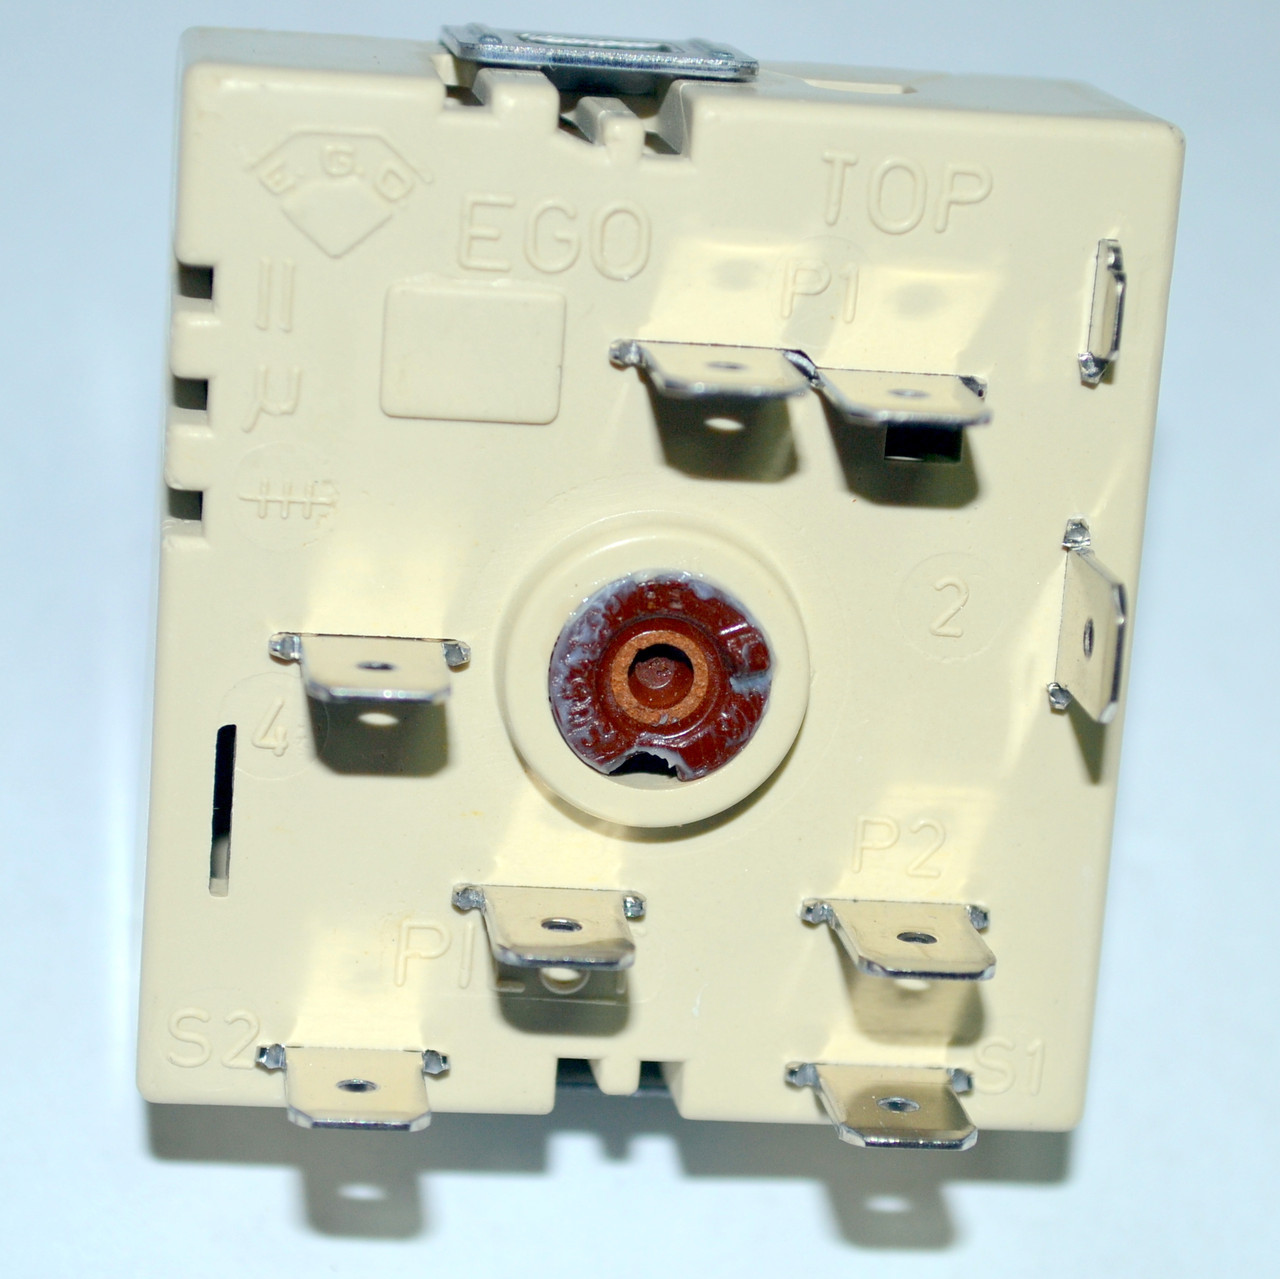 Переключатель мощности конфорок для электроплиты Indesit/Ariston C00037056 (EGO 50.57021.010)